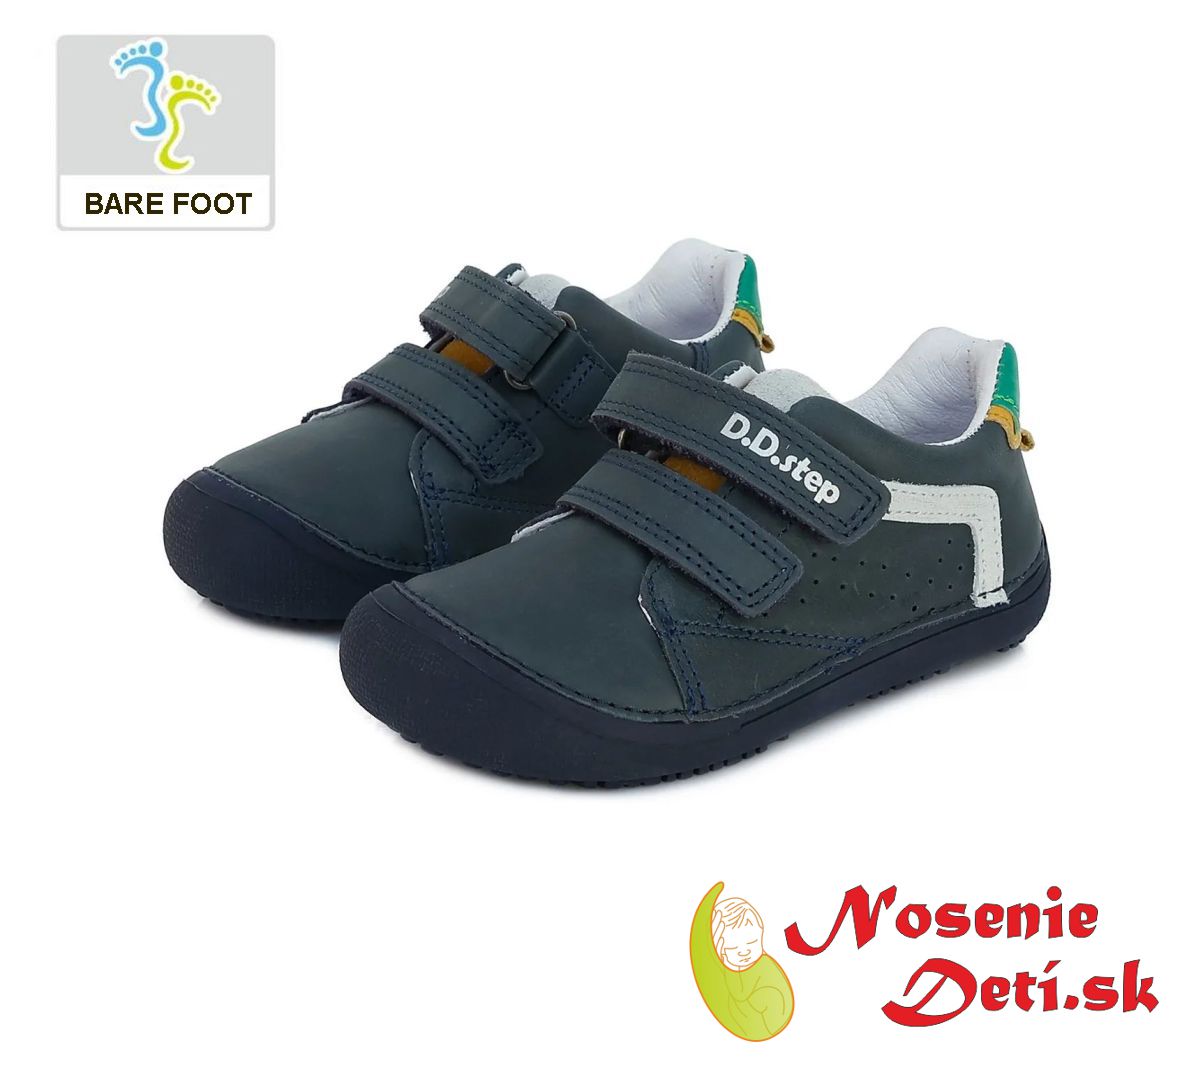 Barefoot celoroční chlapecká obuv DD Step Tmavě modré 063-397A